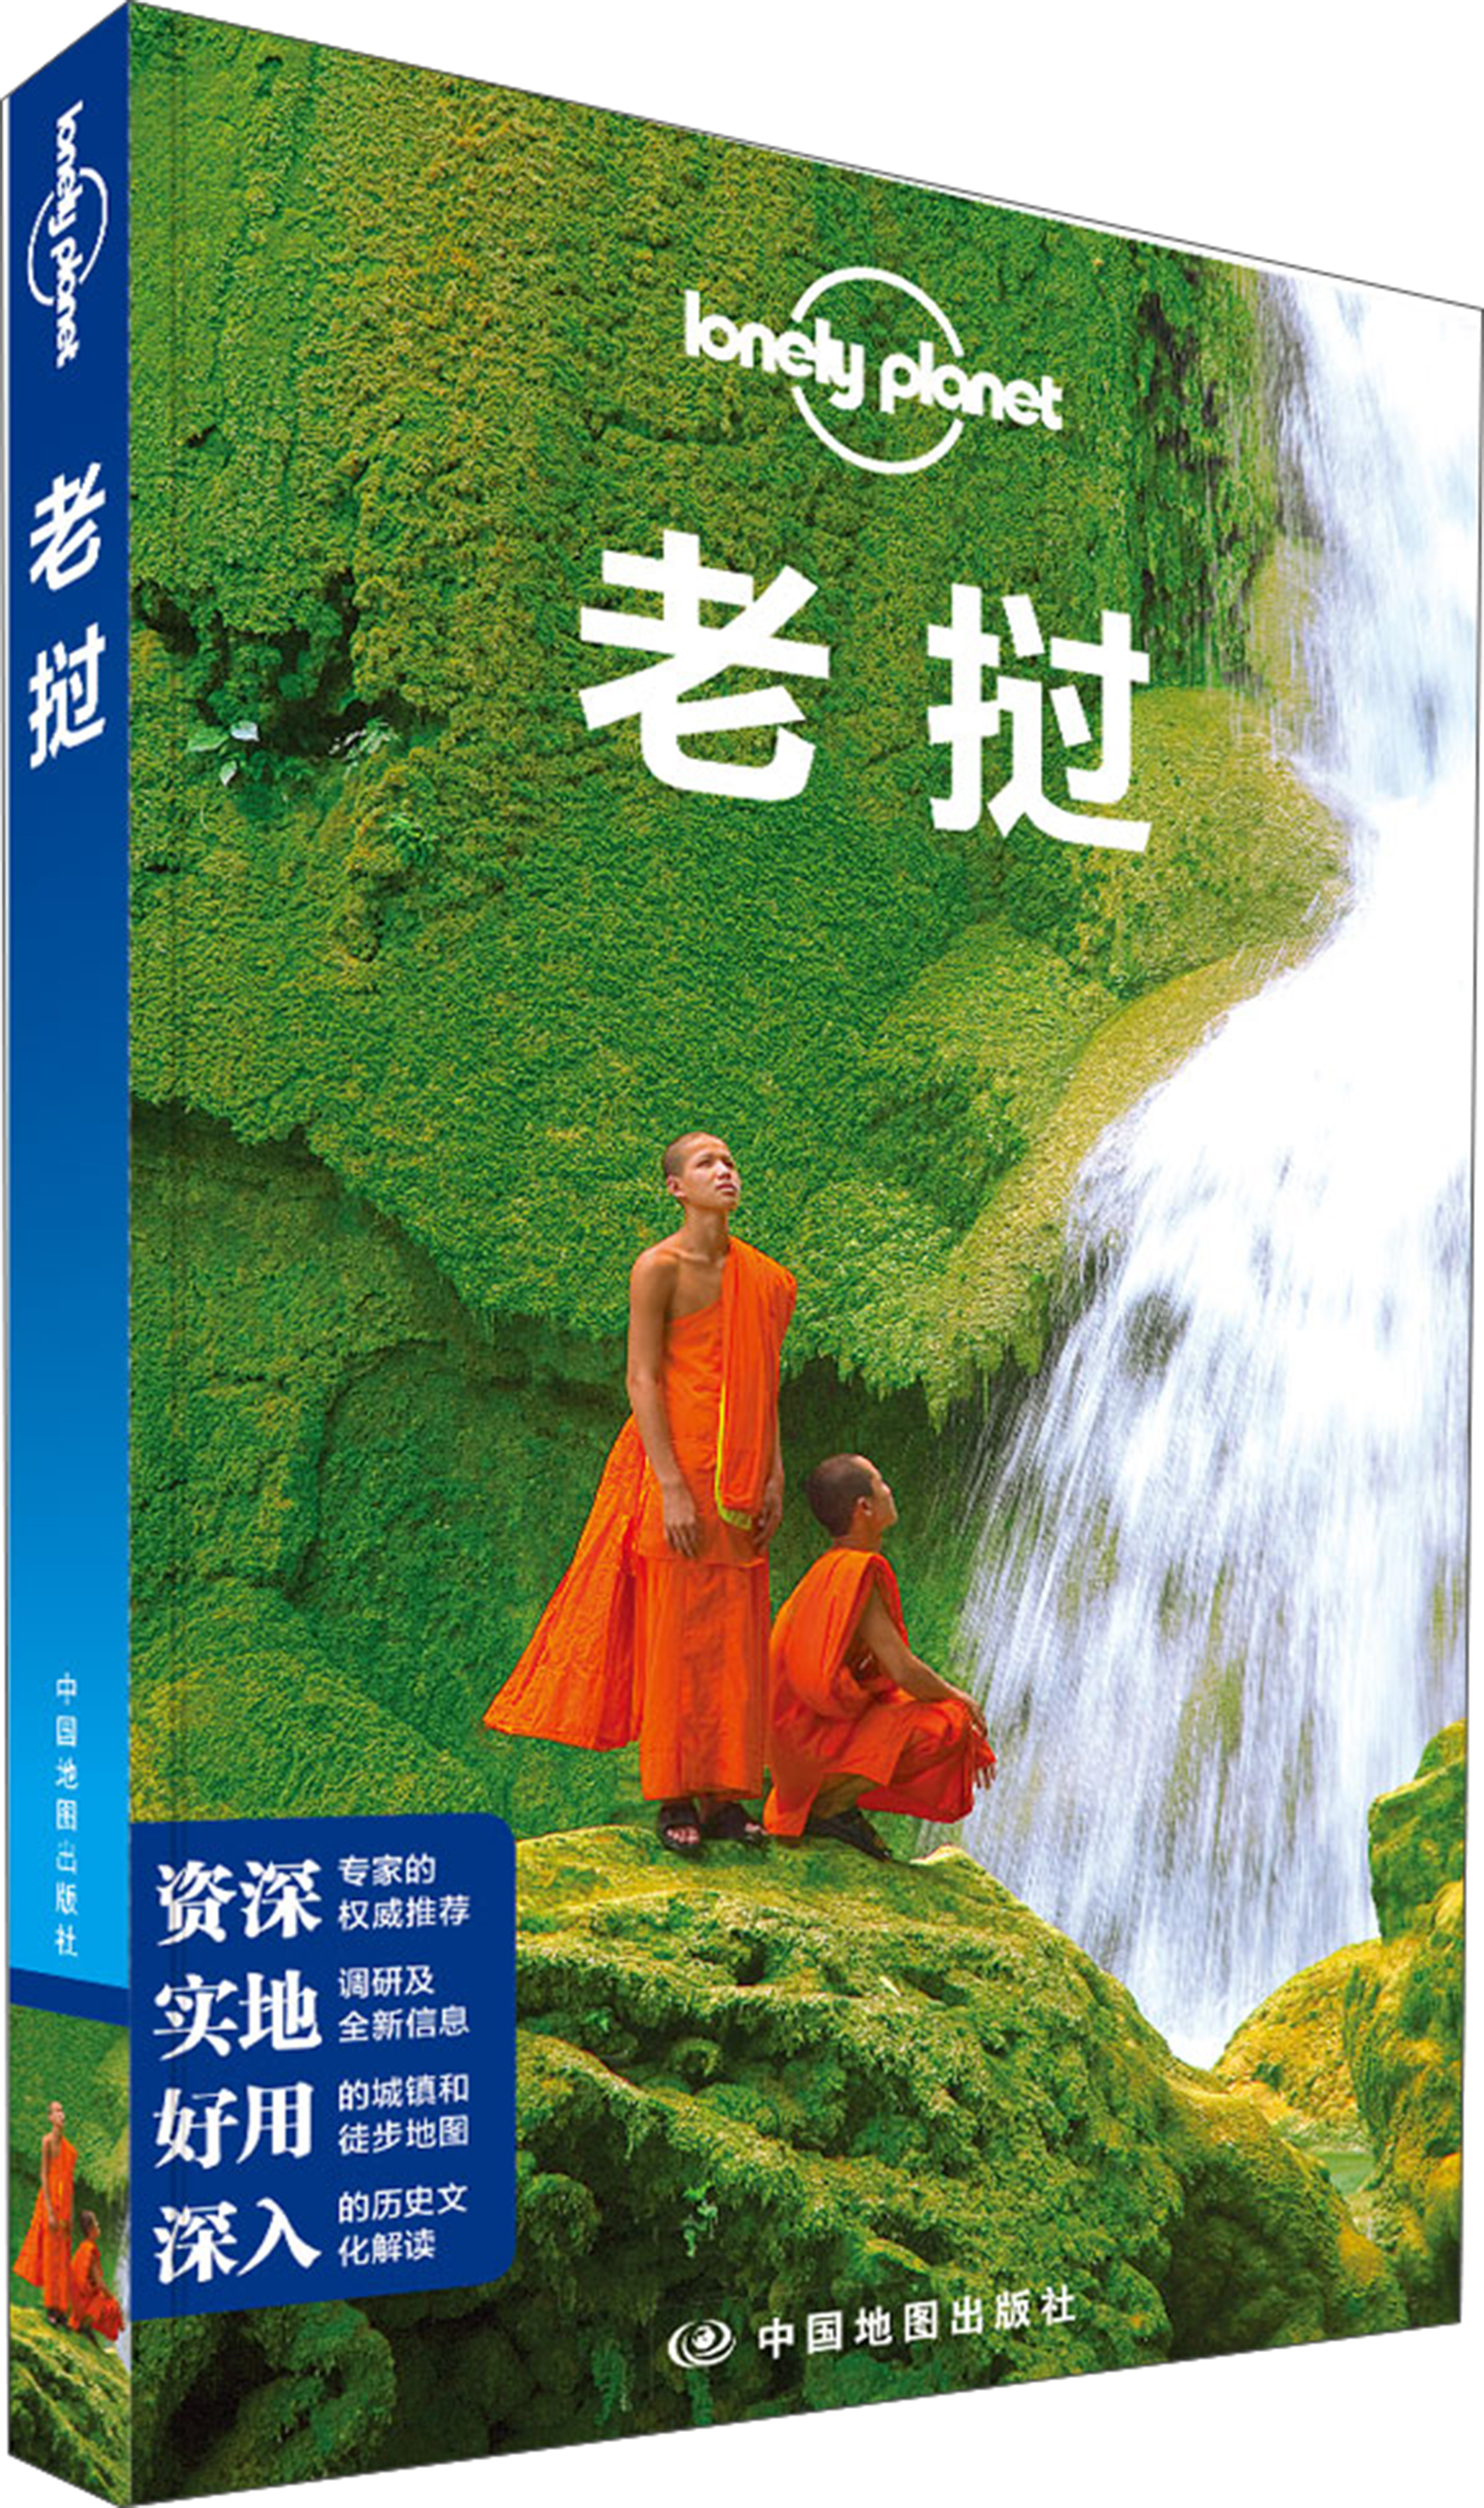 孤独星球Lonely Planet旅行指南系列：老挝 txt格式下载